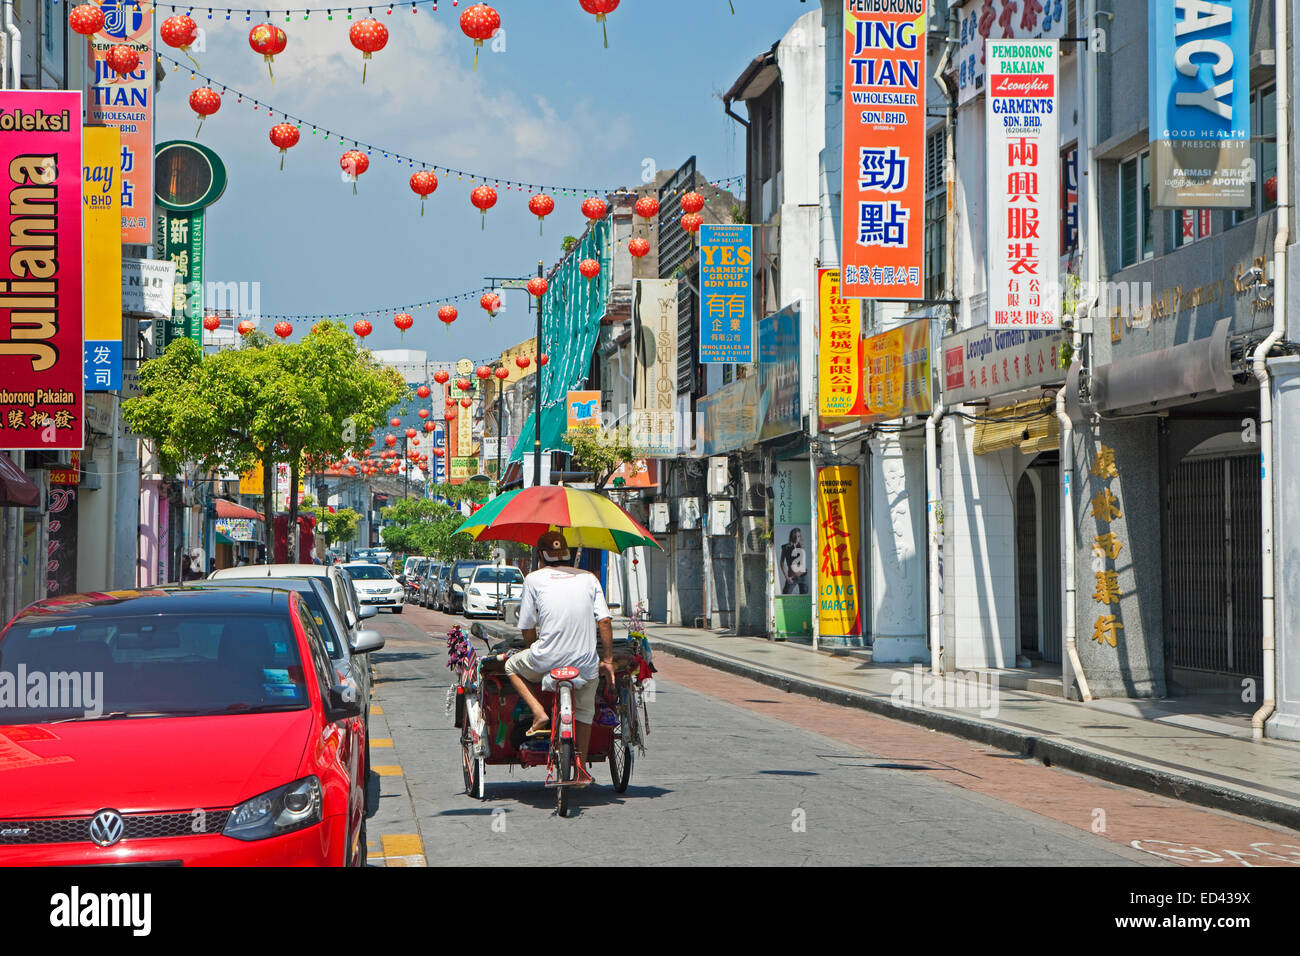 Fahrradrikscha / Beca mit Regenschirm Reiten durch die Einkaufsstraße in der Stadt George Town / Georgetown, Penang, Malaysia Stockfoto